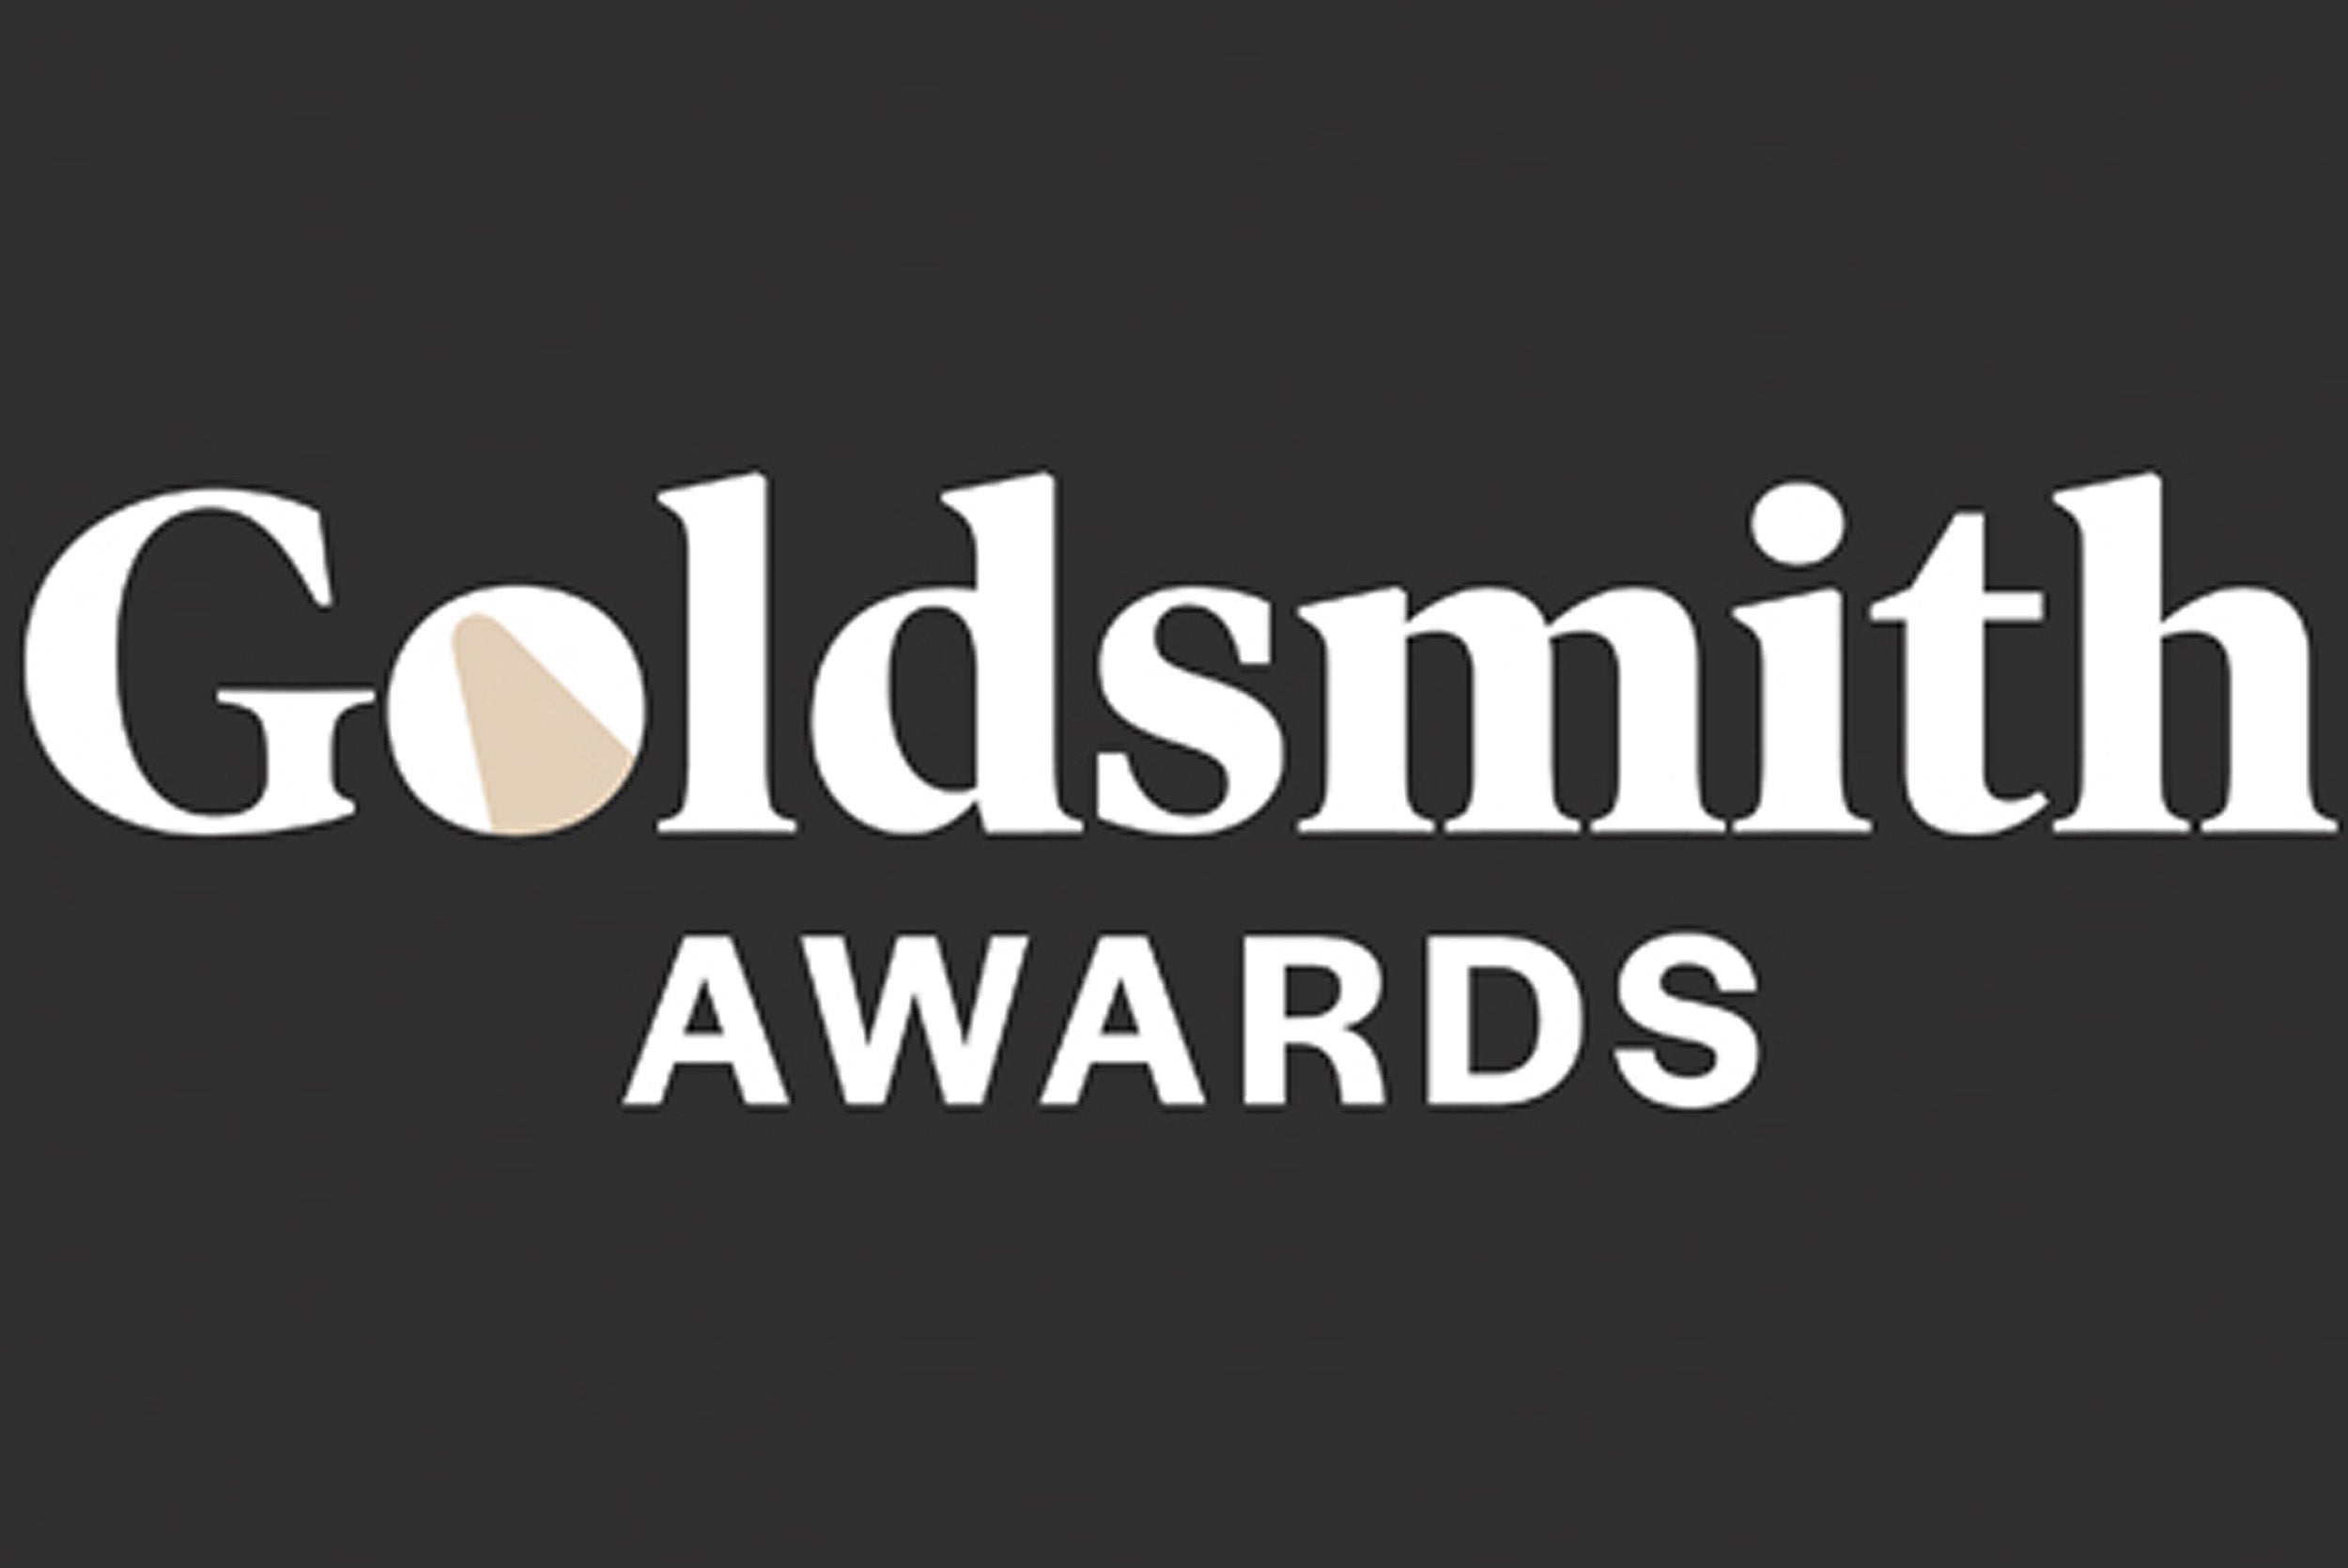 Goldsmith logo on black background.